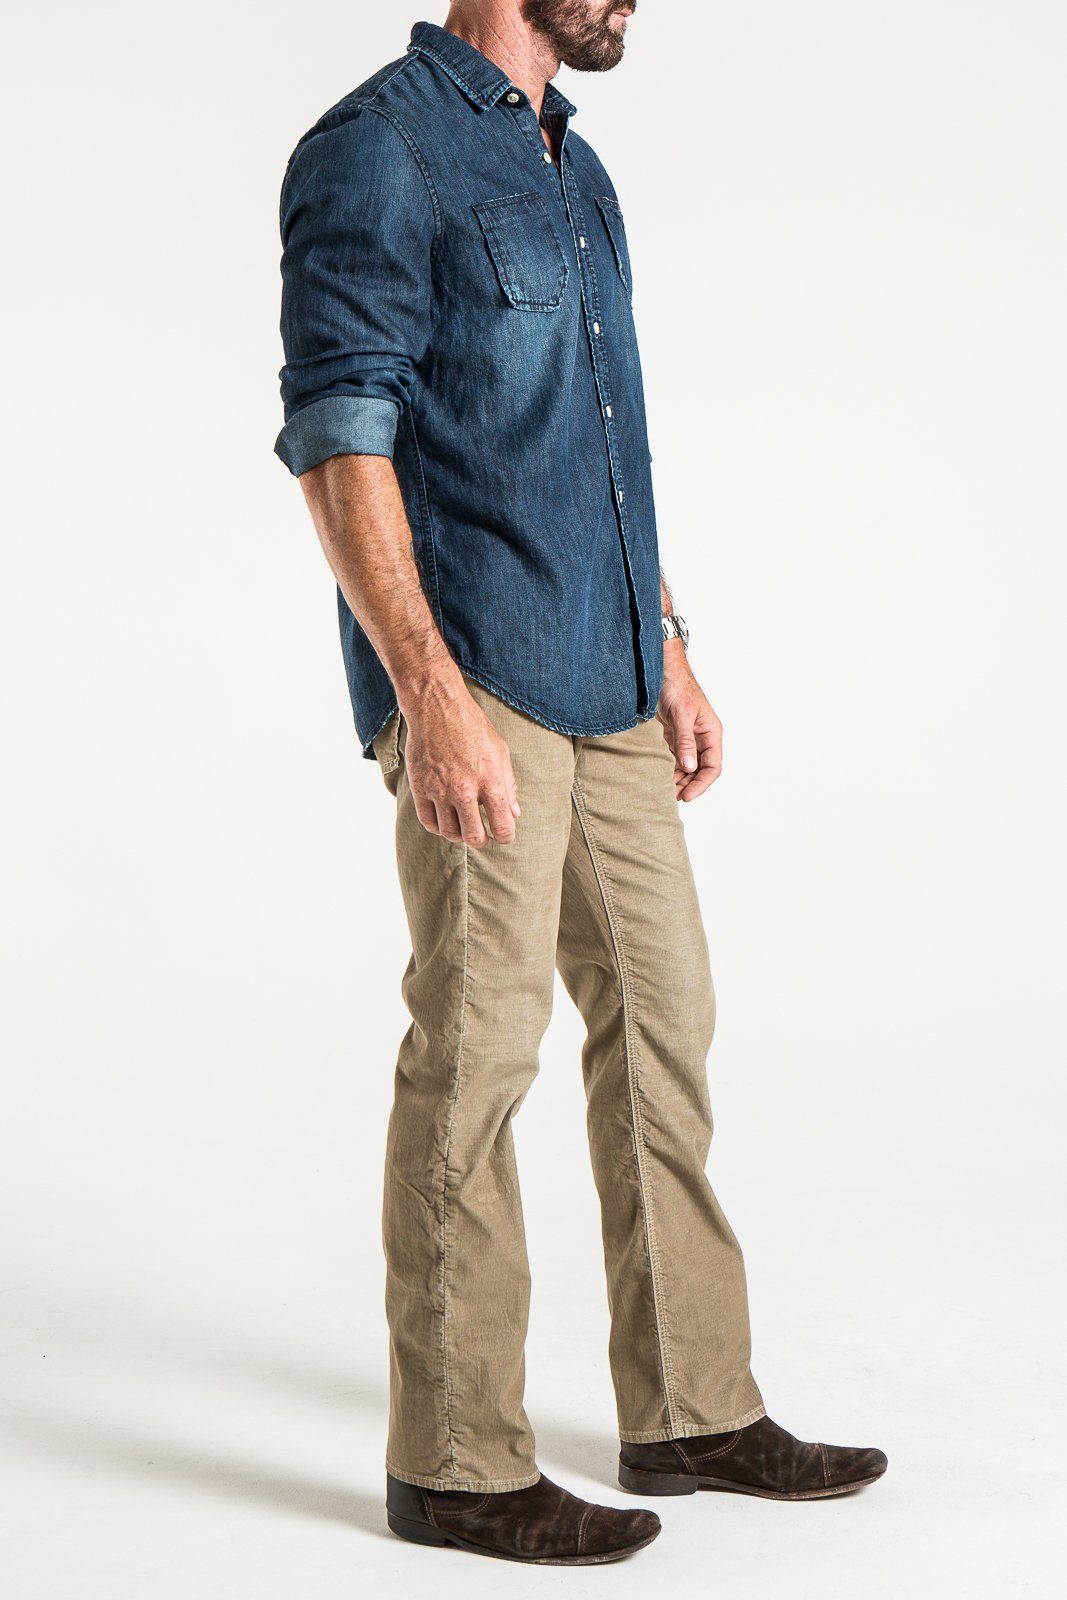 Corduroy jeans rustic man standing sideways